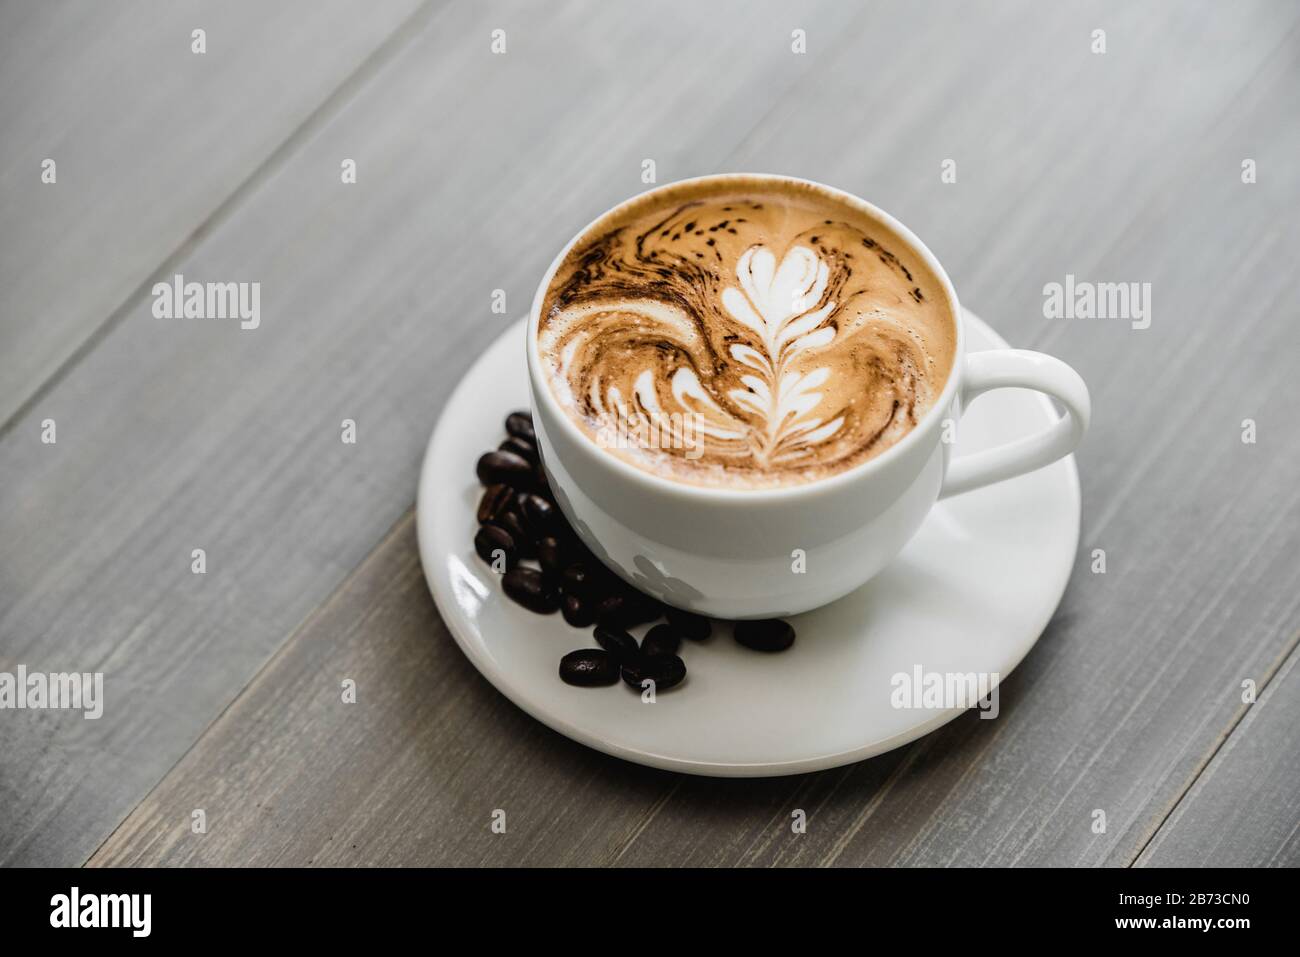 Caffè appena preparato con latte art in fern pattern in tazza bianca su tavolato in legno Foto Stock